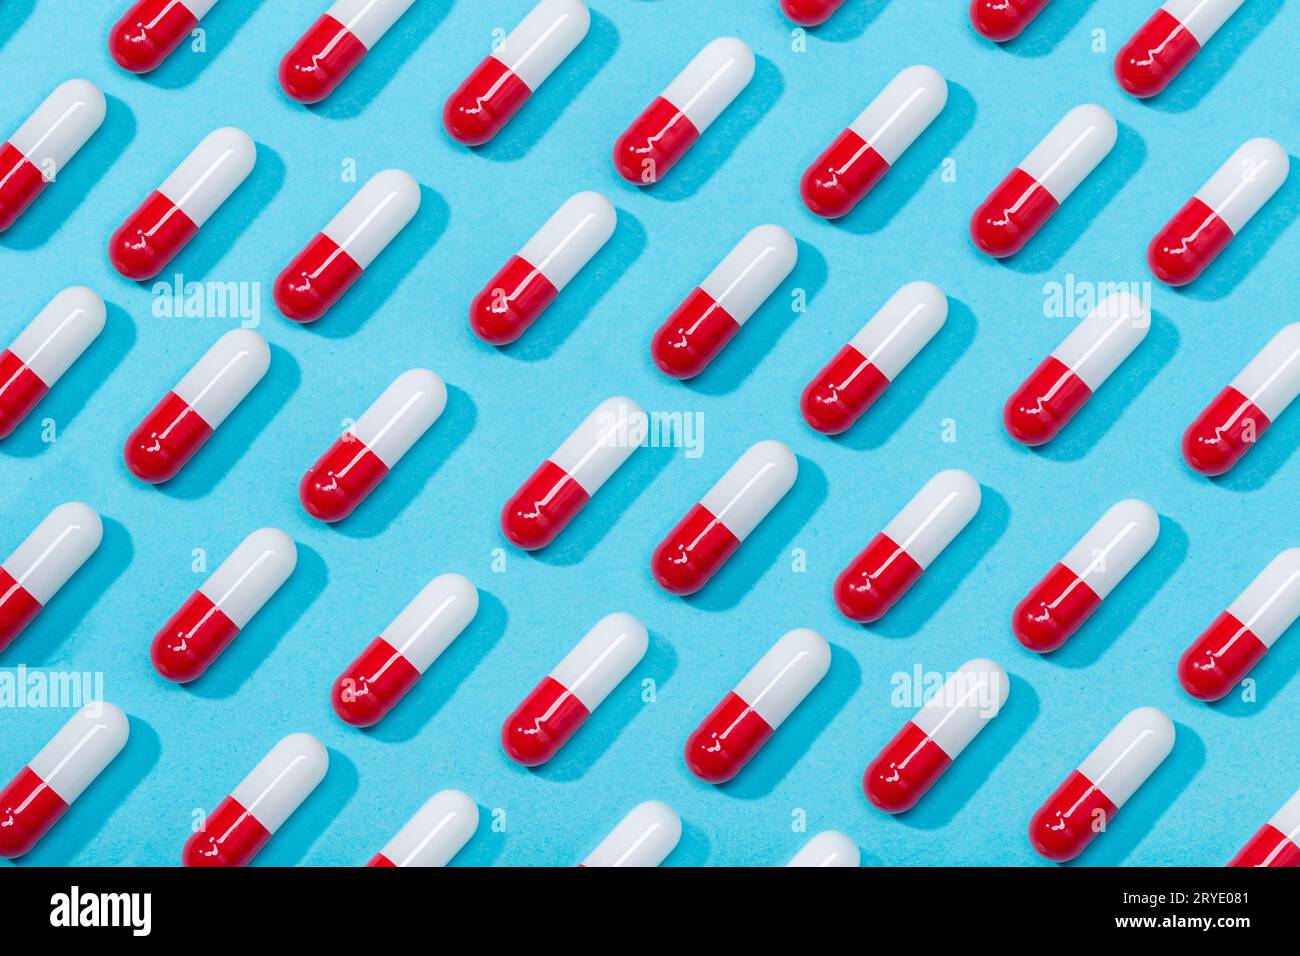 Schema di capsule per pillola medica. Sfondo blu. Medicina, sanità o concetto di farmacia Foto Stock